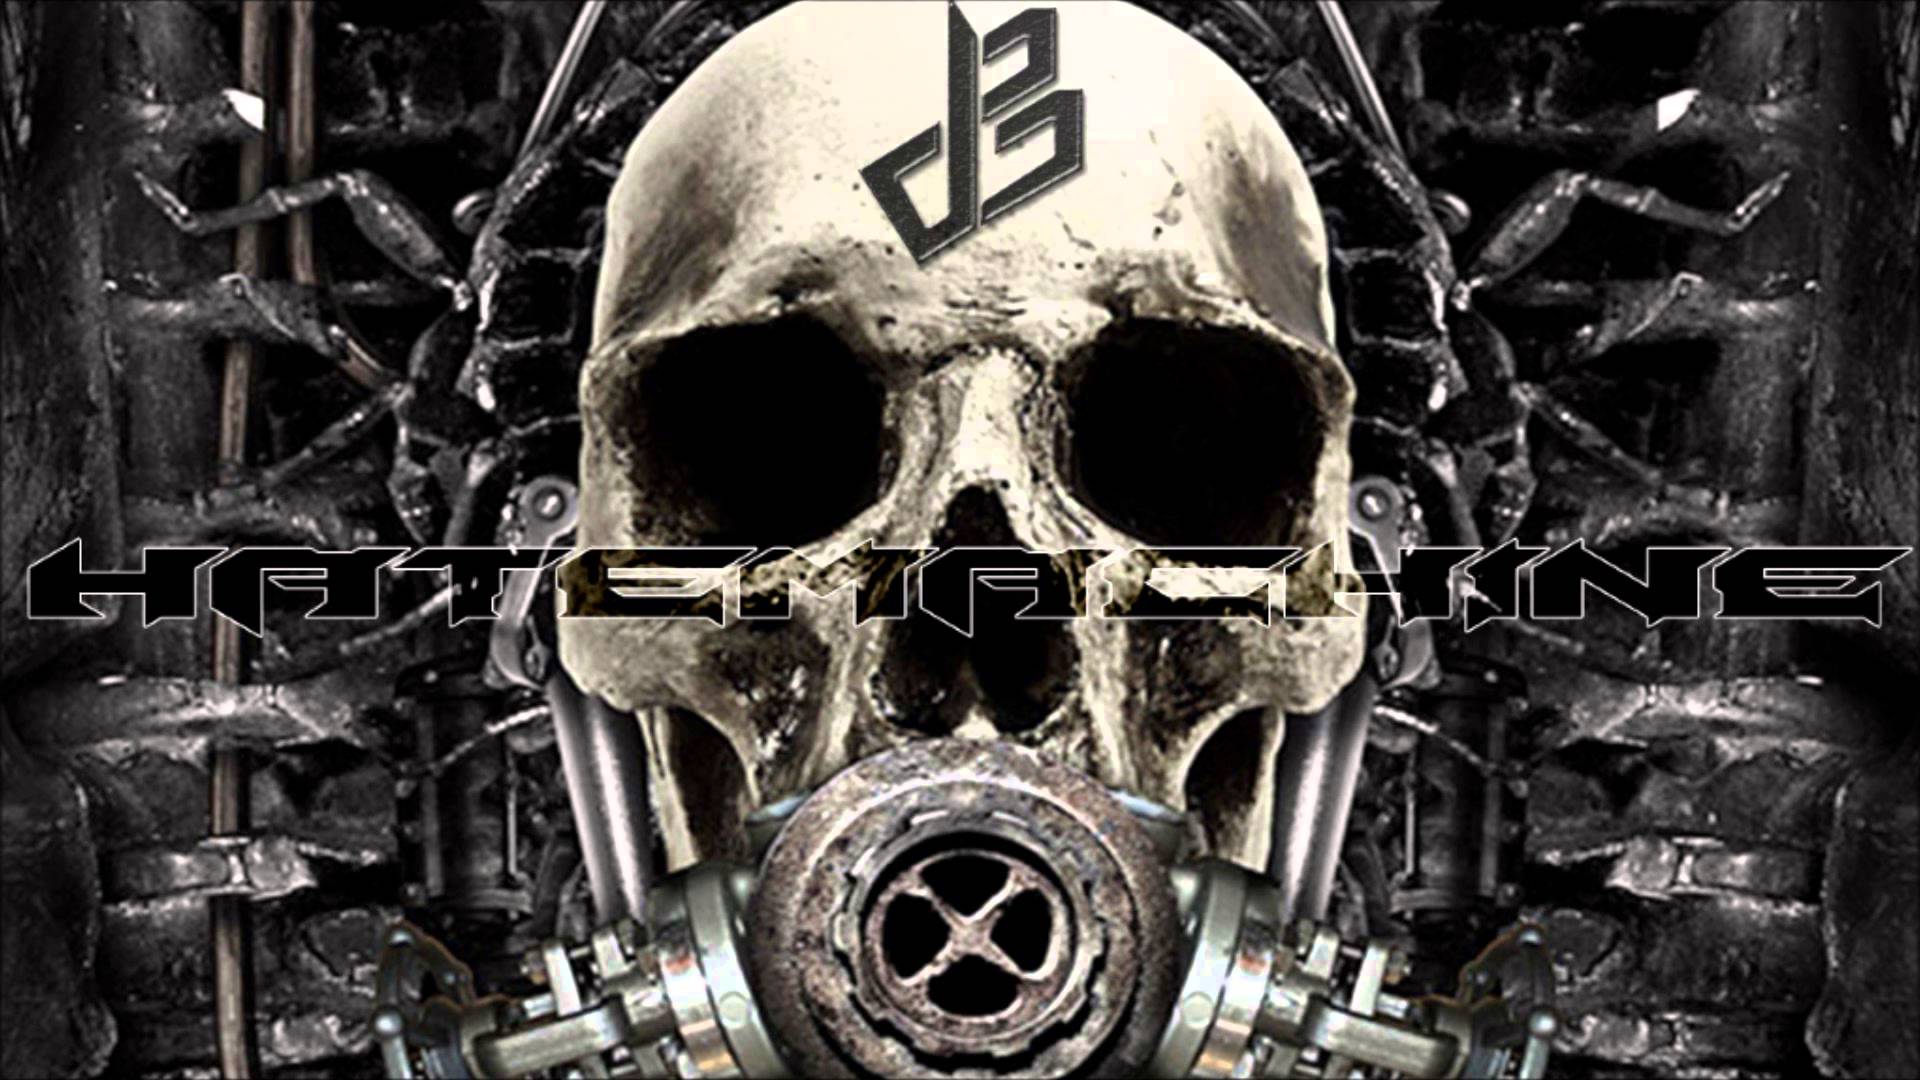 Skull Hr Giger Art - HD Wallpaper 